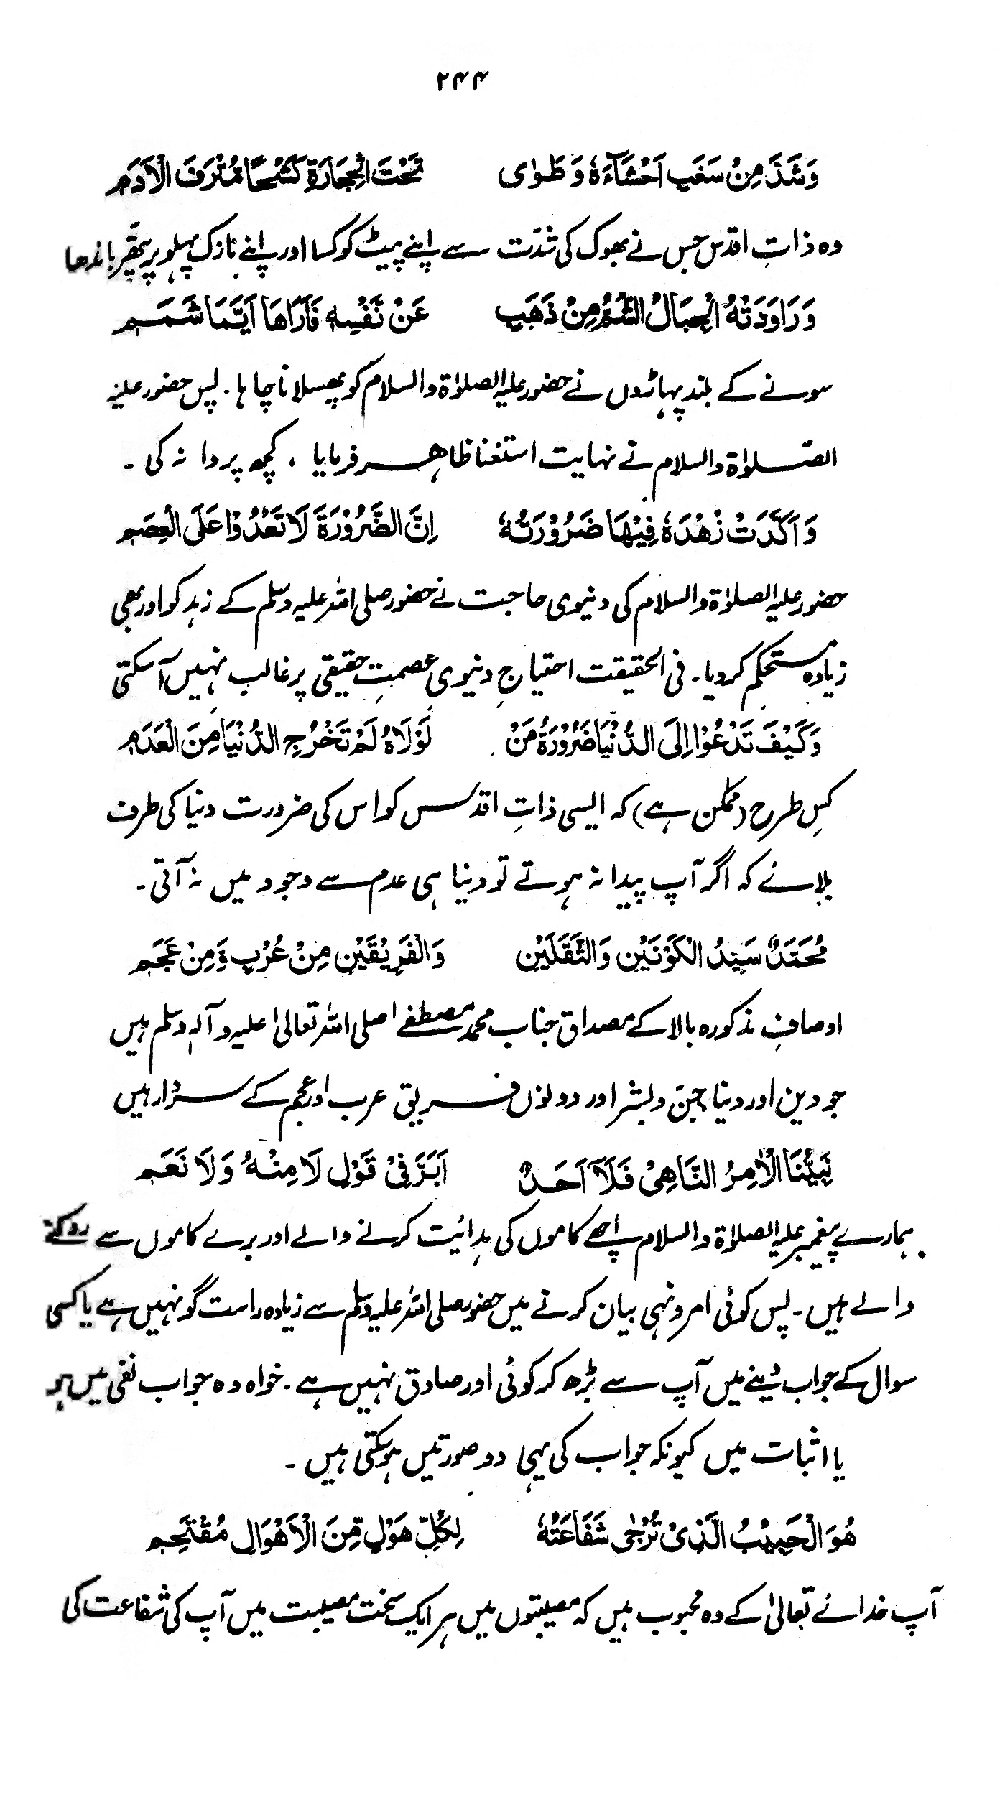 tala al badru alayna written in urdu